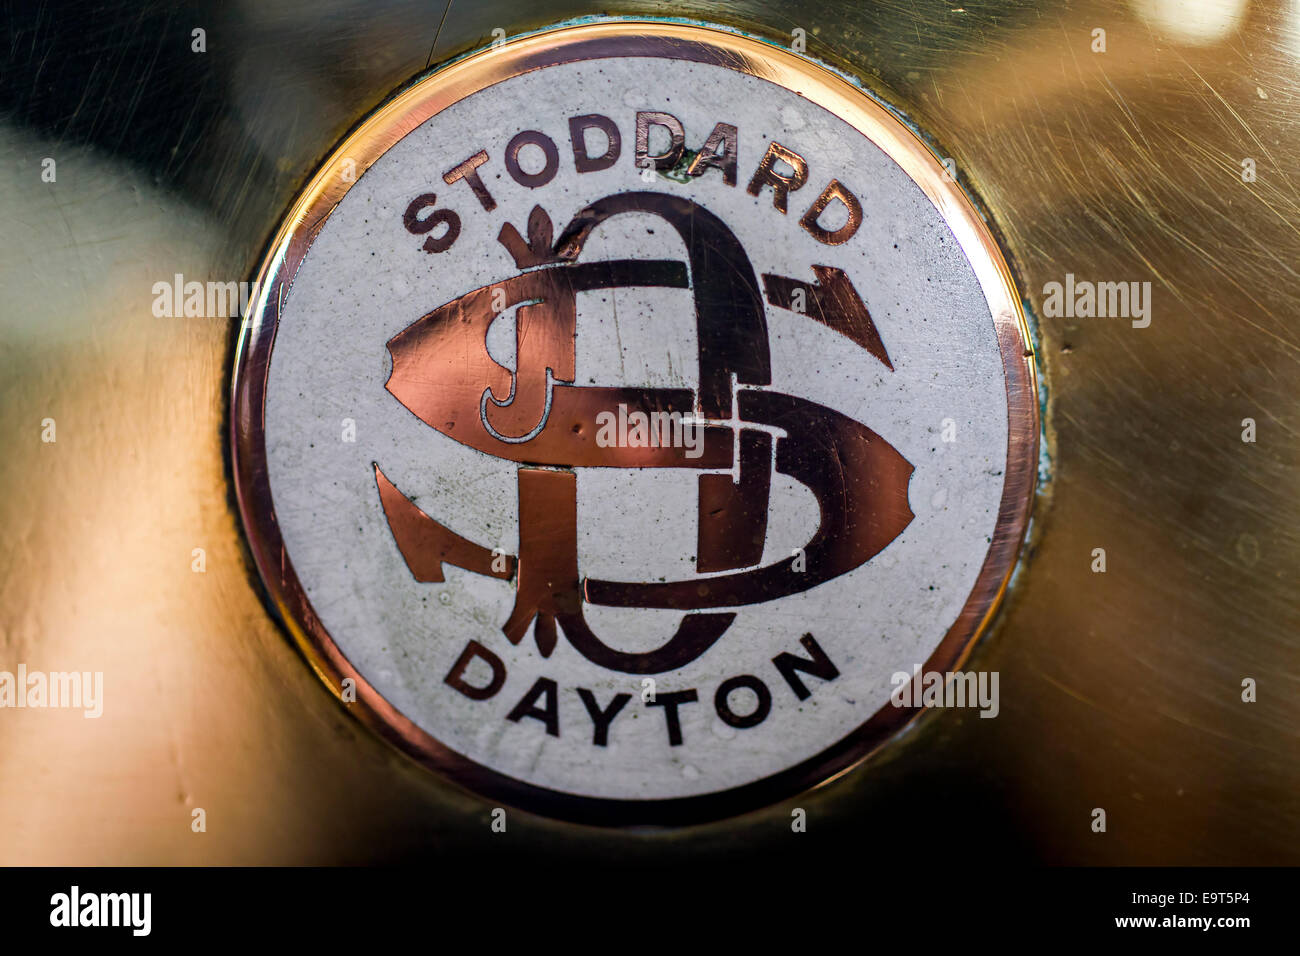 Stoddard-Dayton Stockfoto